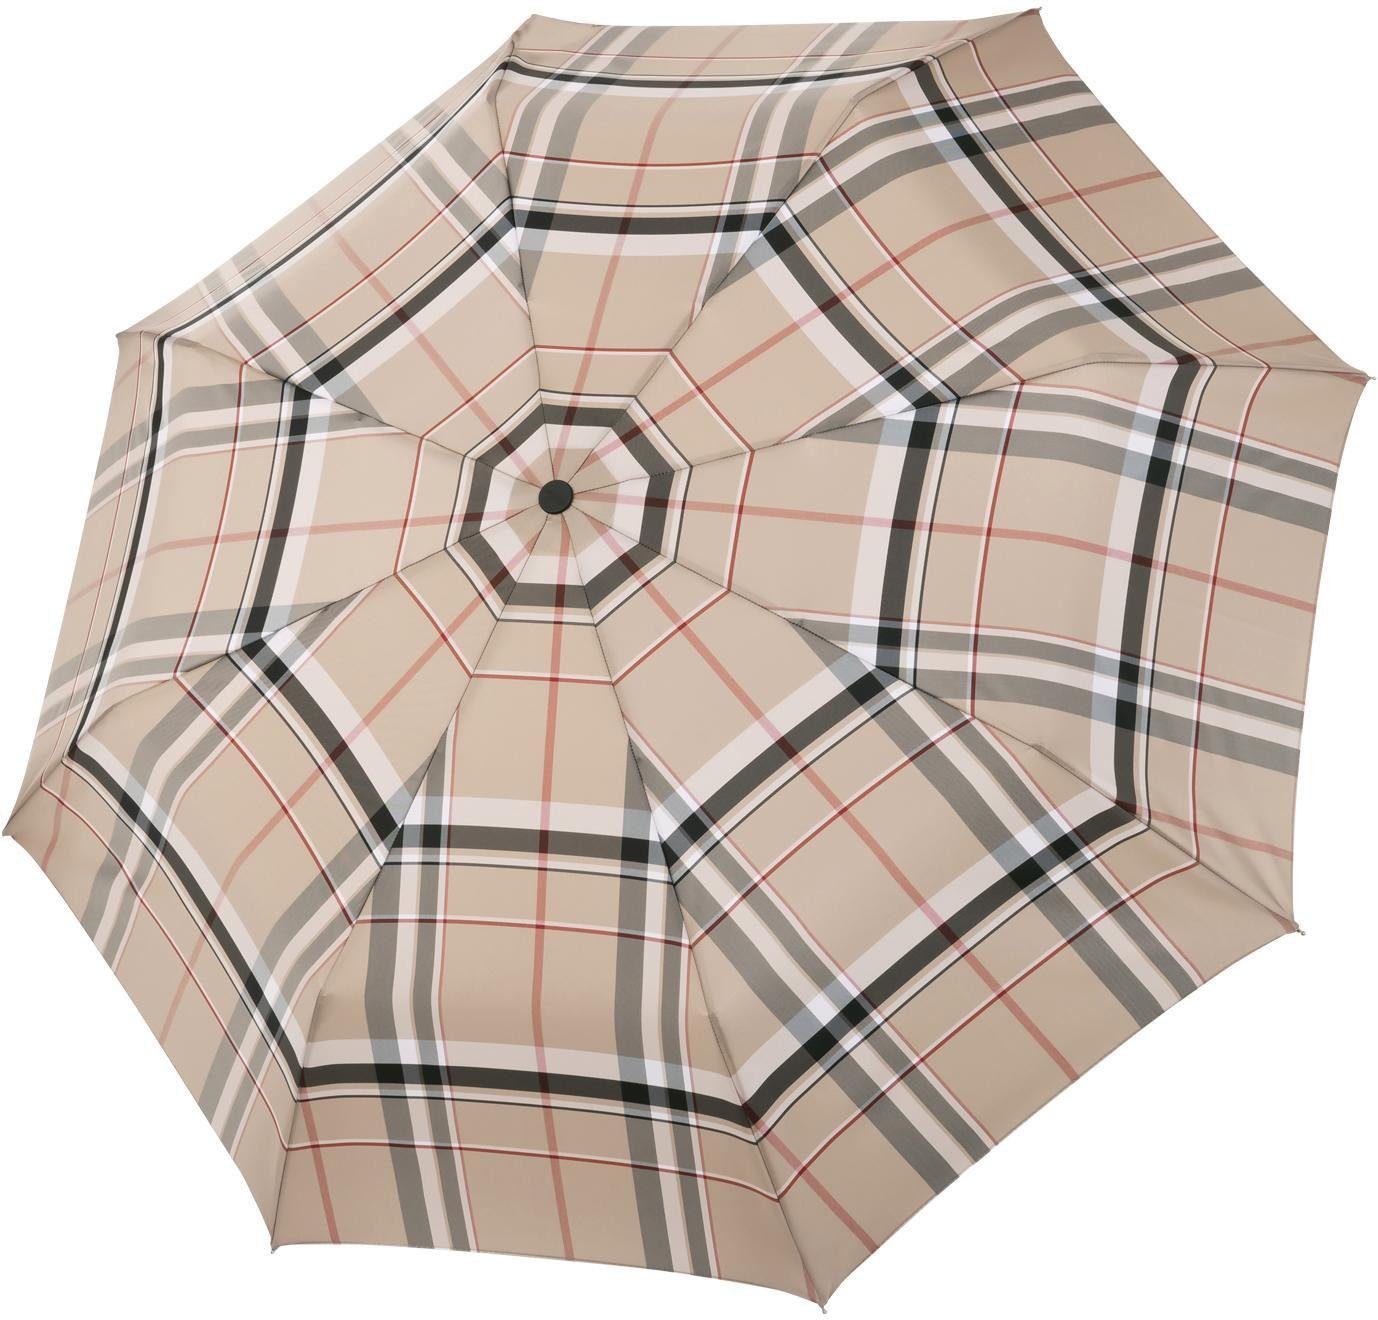 Damen Regenschirme doppler MANUFAKTUR Taschenregenschirm Serge, karo beige, handgemachter Manufaktur-Taschenschirm